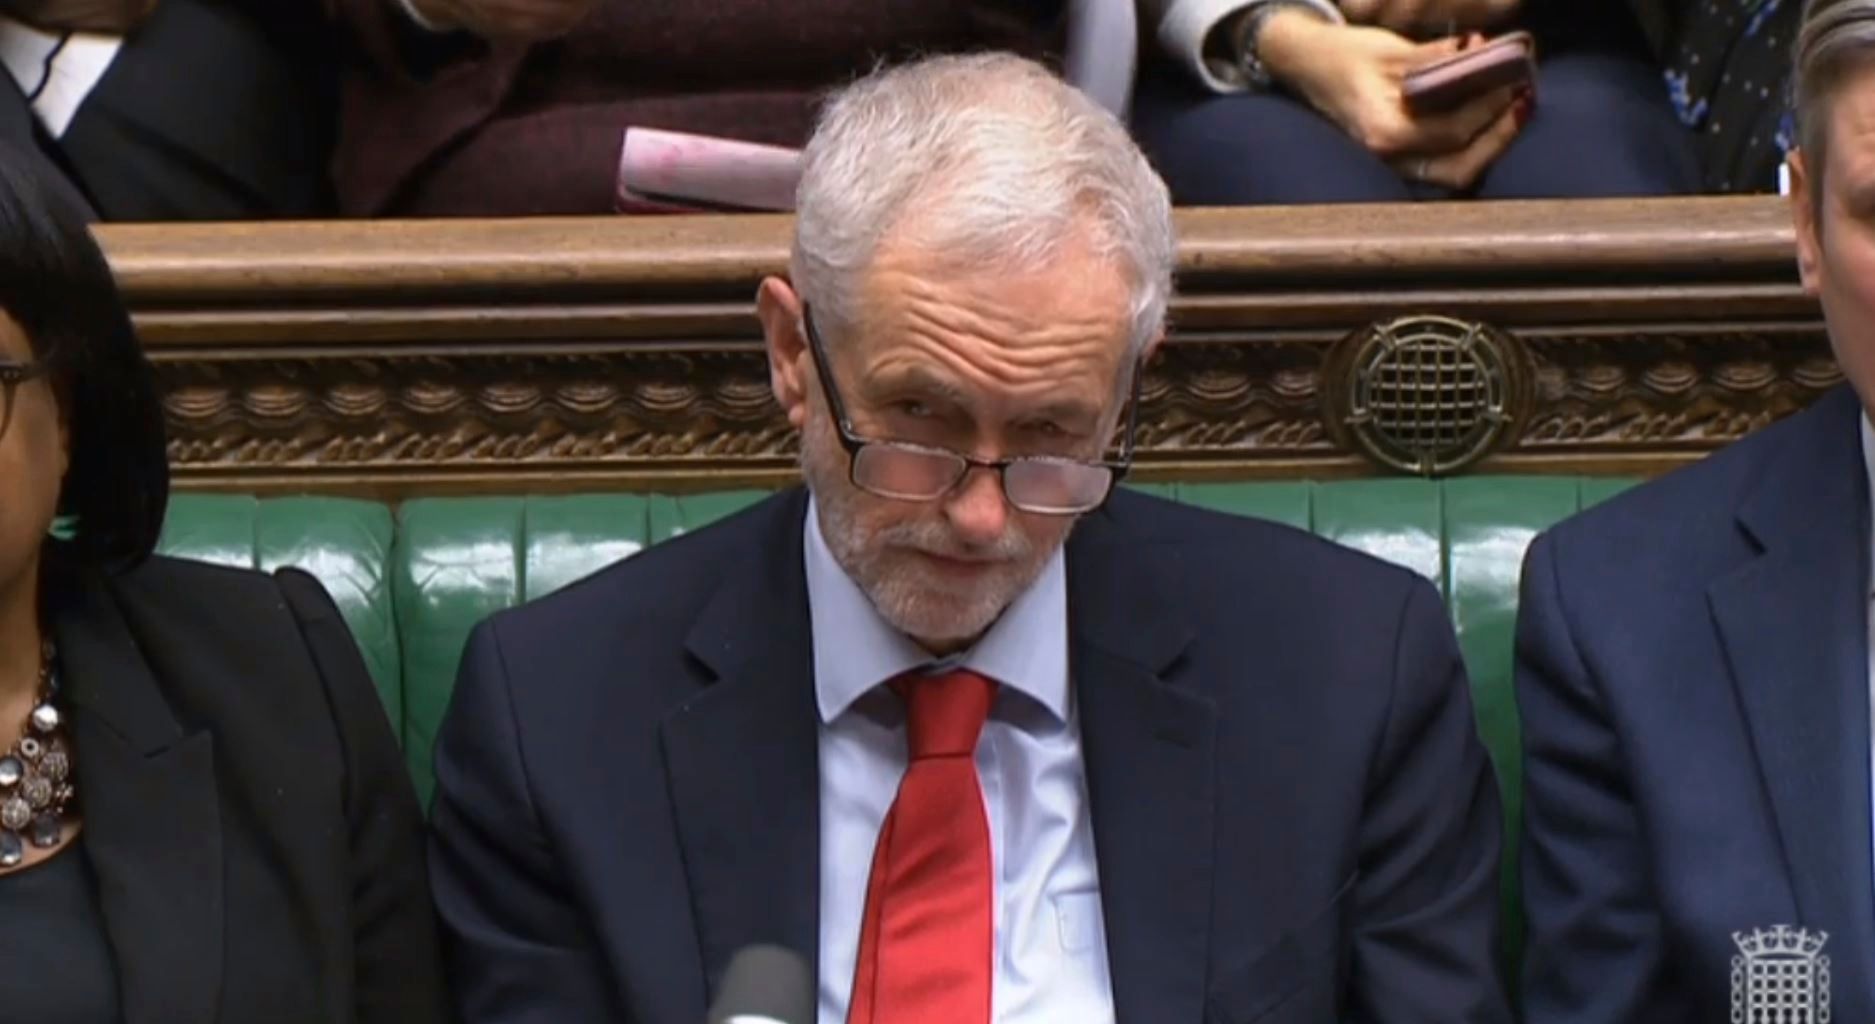 Lídr labouristů Jeremy Corbyn v britské Dolní sněmovně.